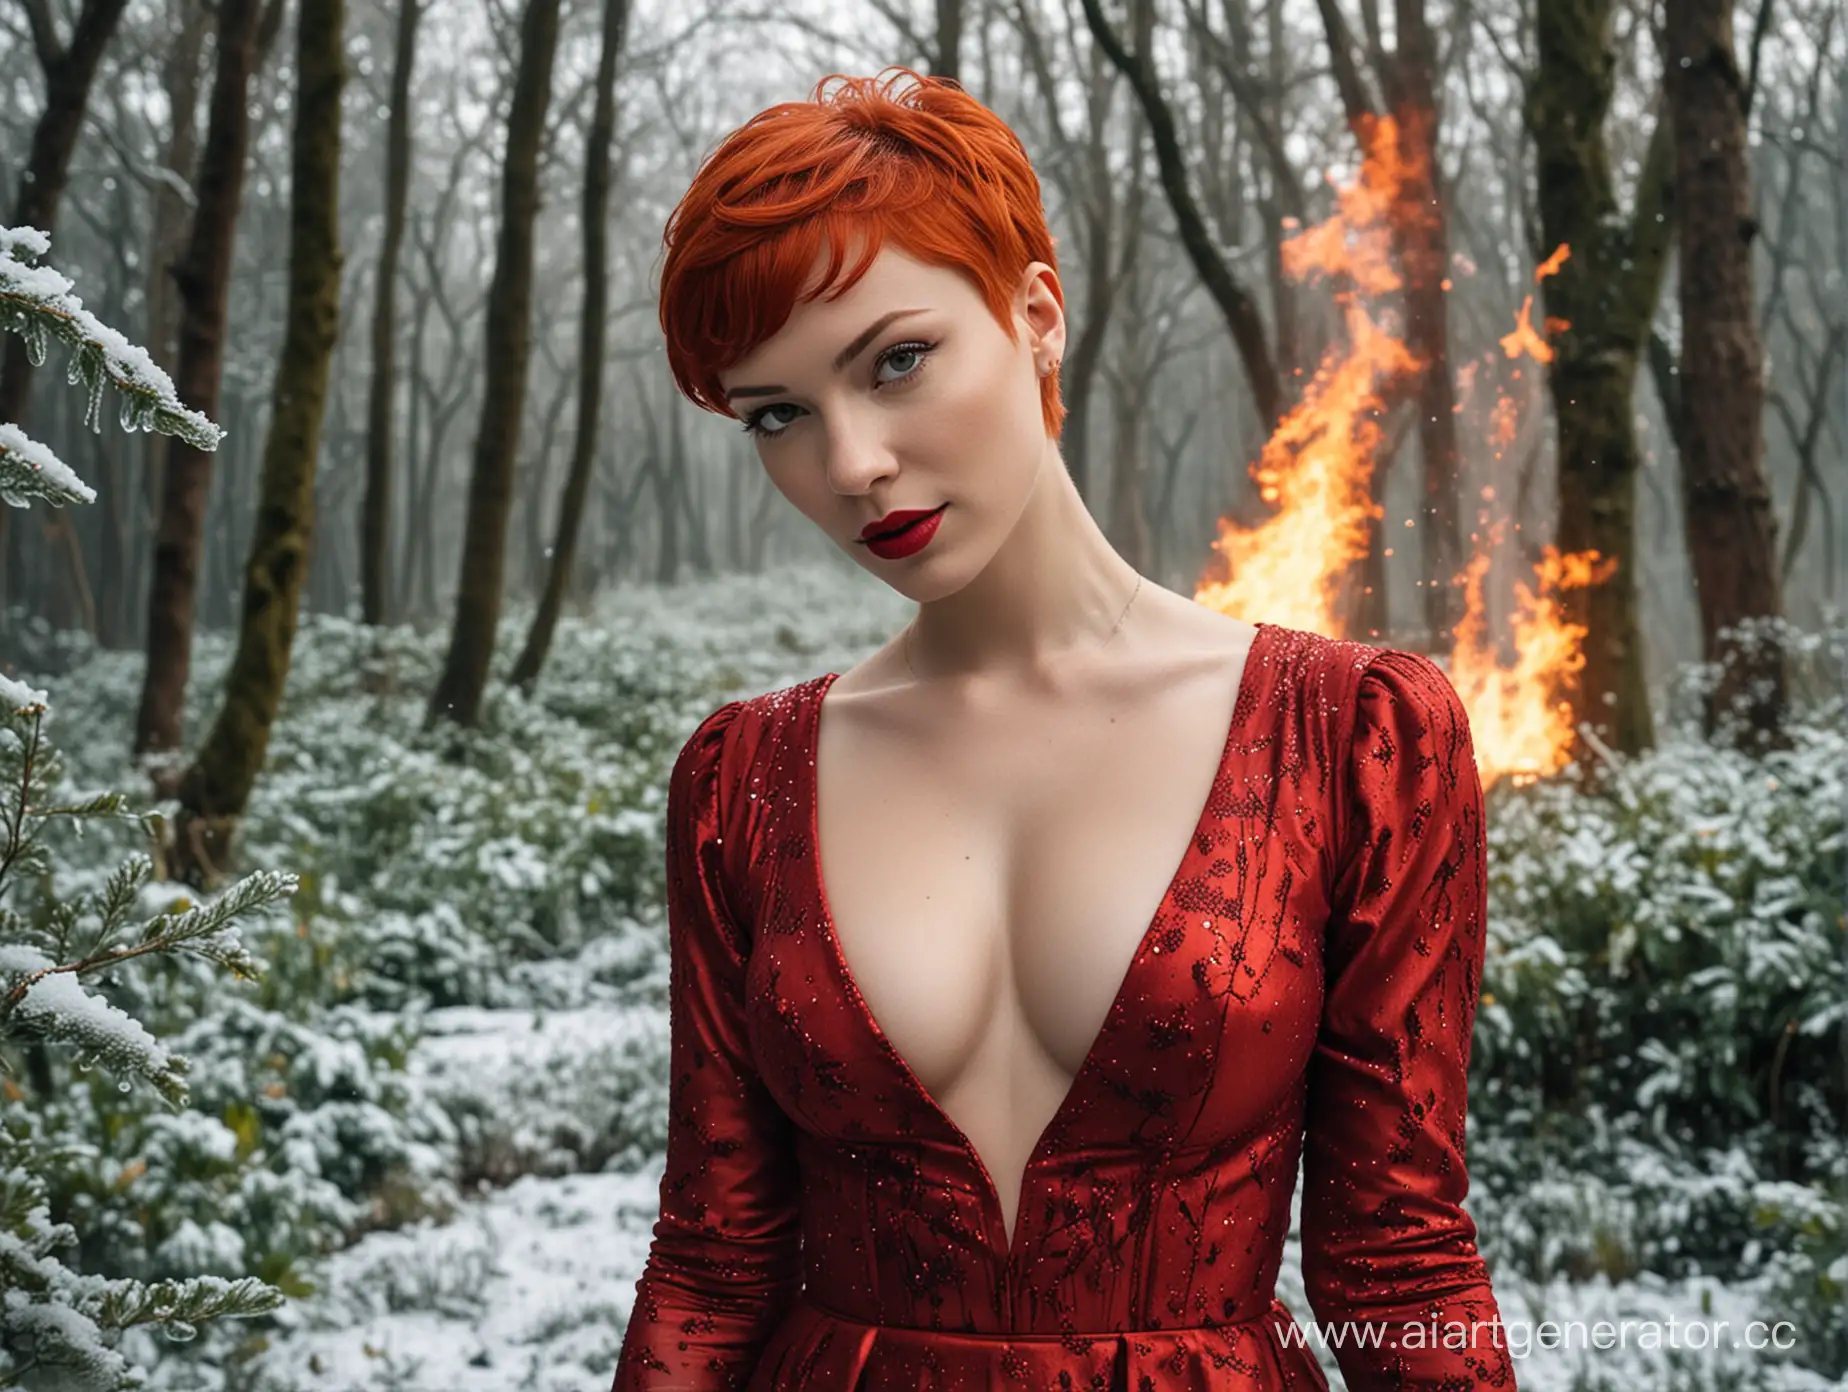 девушка с яркими красными волосами и  стрижкой "пикси", красными губами  внешностью как у Марипосы , в красном платье ,своременном но тюдоров , на фоне льда и пламени и зелени деревьев